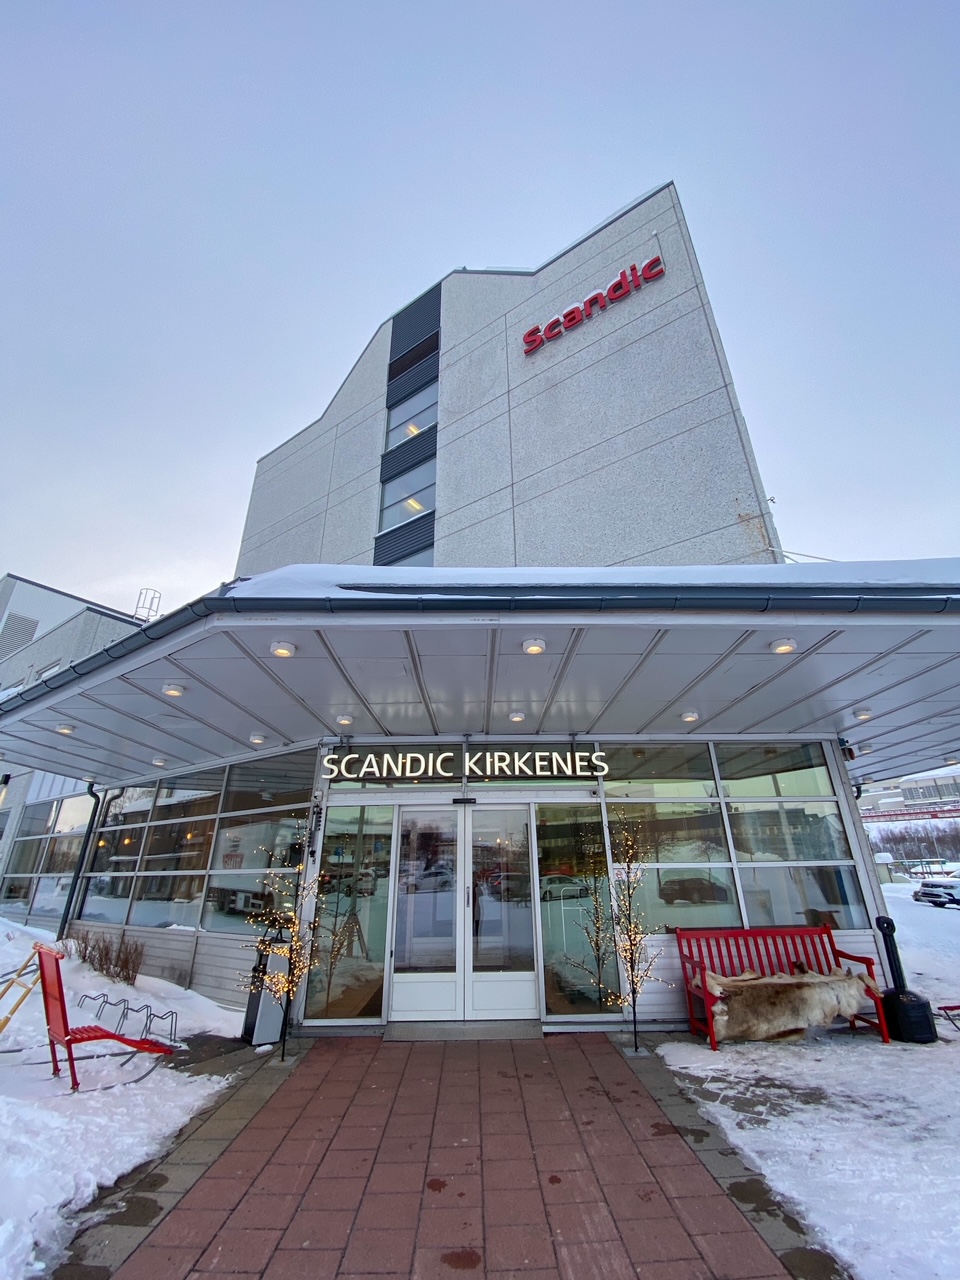 the Scandic Kirkenes in Norway